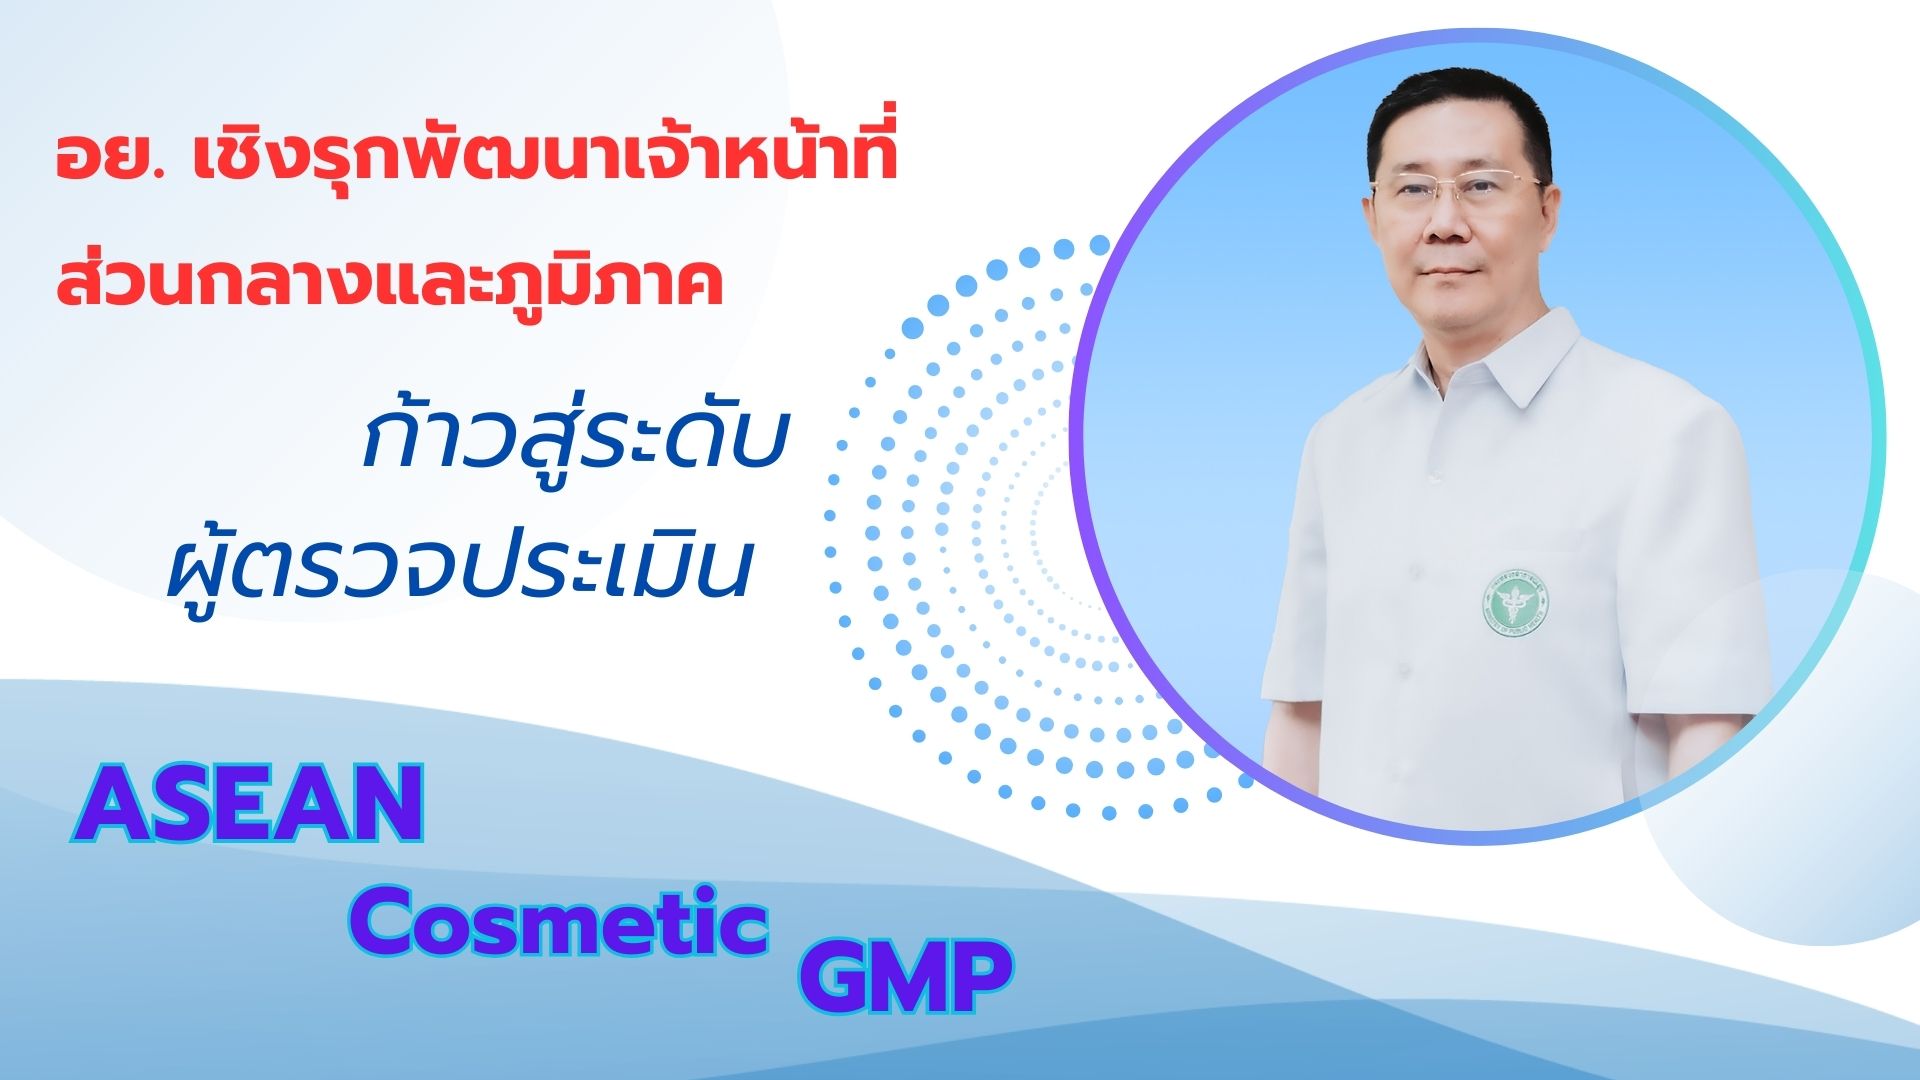 อย. เชิงรุกพัฒนาเจ้าหน้าที่ส่วนกลางและภูมิภาค ก้าวสู่ระดับผู้ตรวจประเมิน ASEAN Cosmetic GMP 